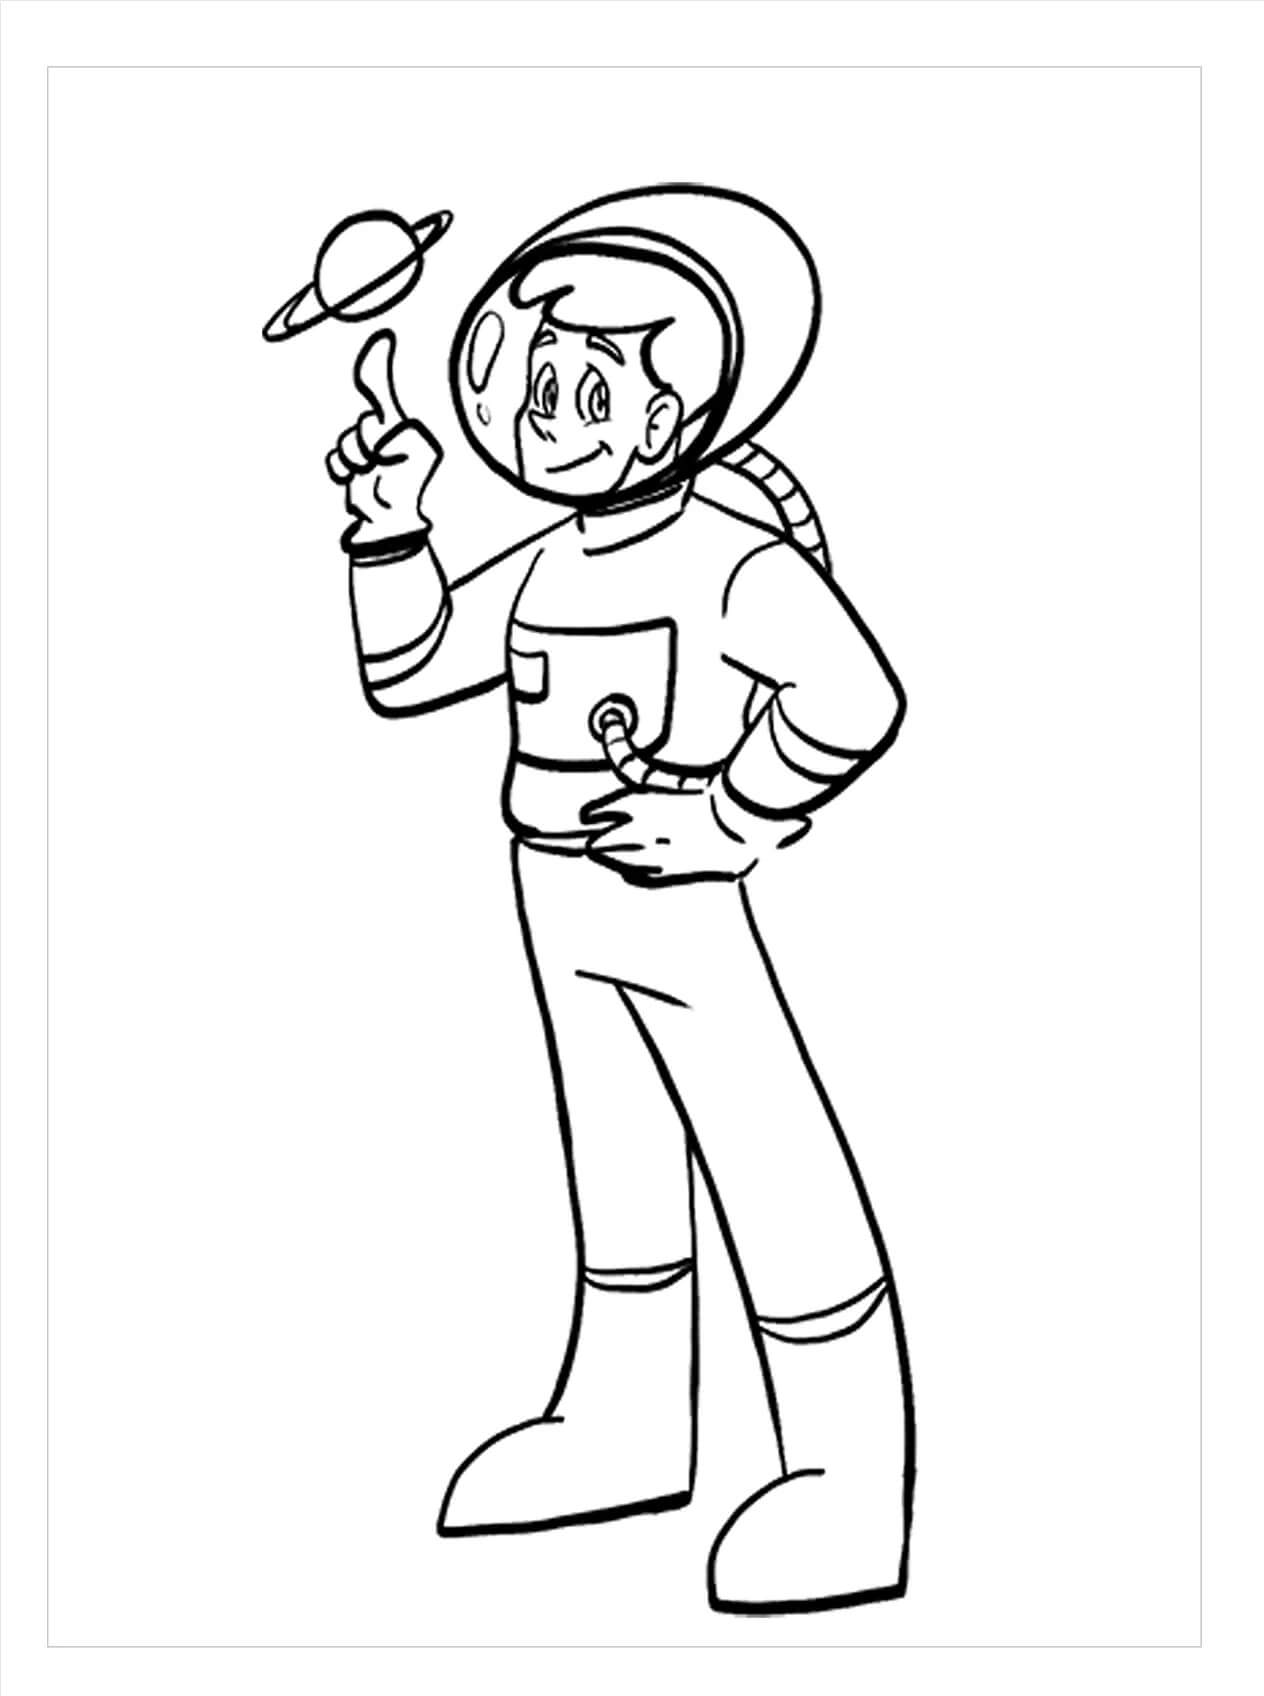 Dibujos de Astronauta Libre para colorear